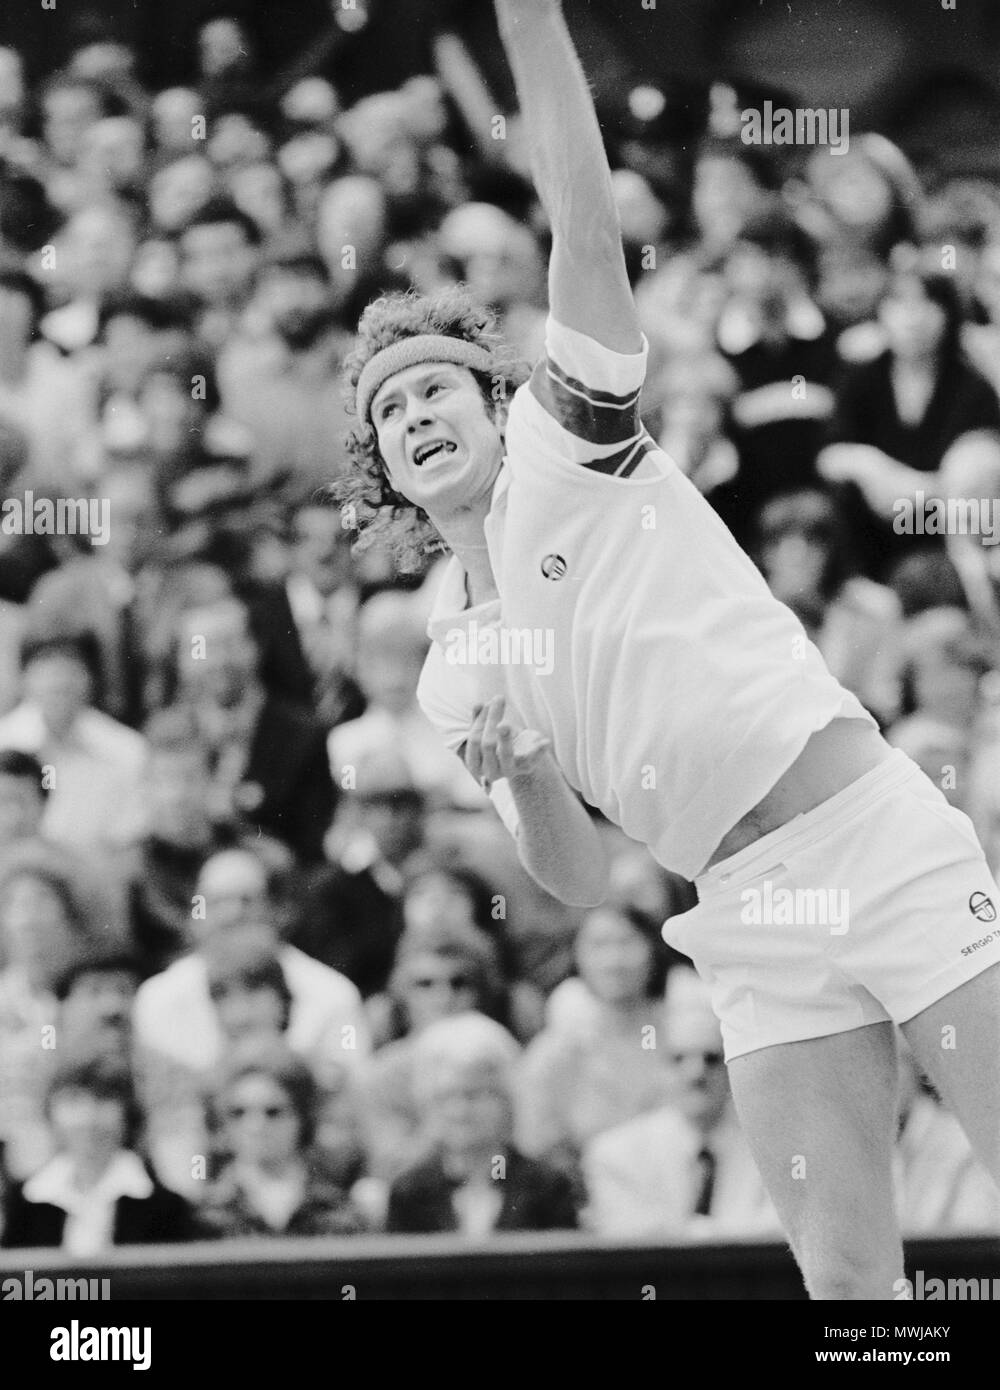 John McEnroe lors du match contre Bjorn Borg Photo Stock - Alamy